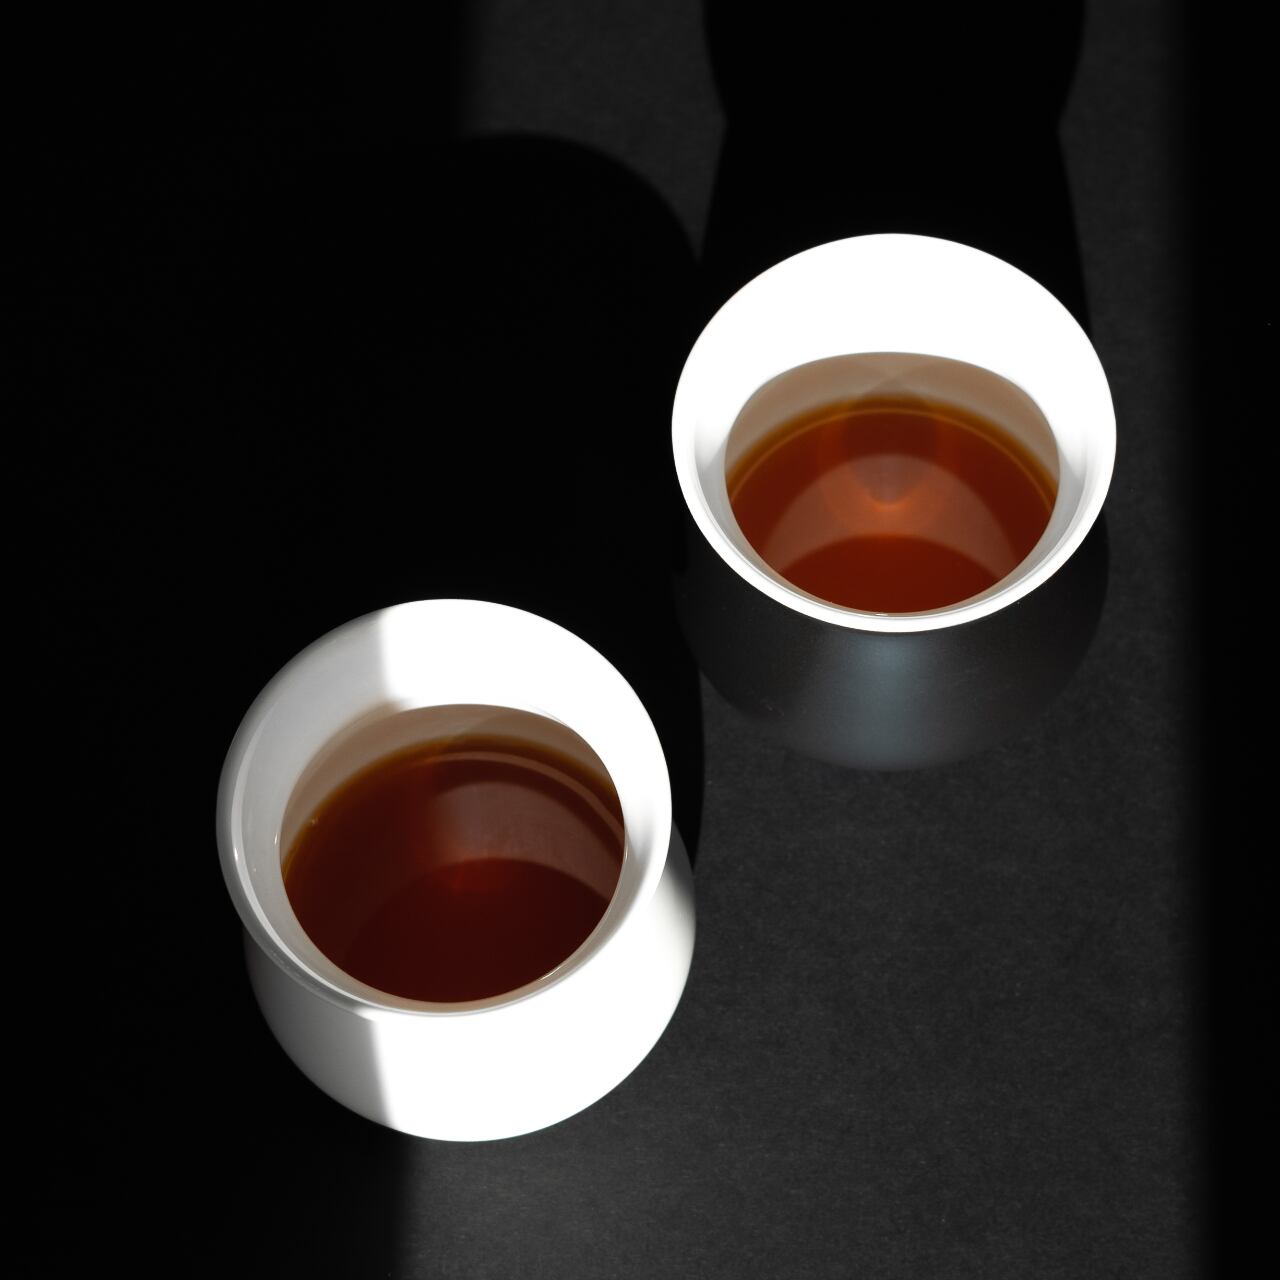 五感でコーヒーを楽しむコーヒーカップ コーヒーの香り 色 味をより深く感じることを主眼にチューニング Sencecup Orea A 278 For Slow Living